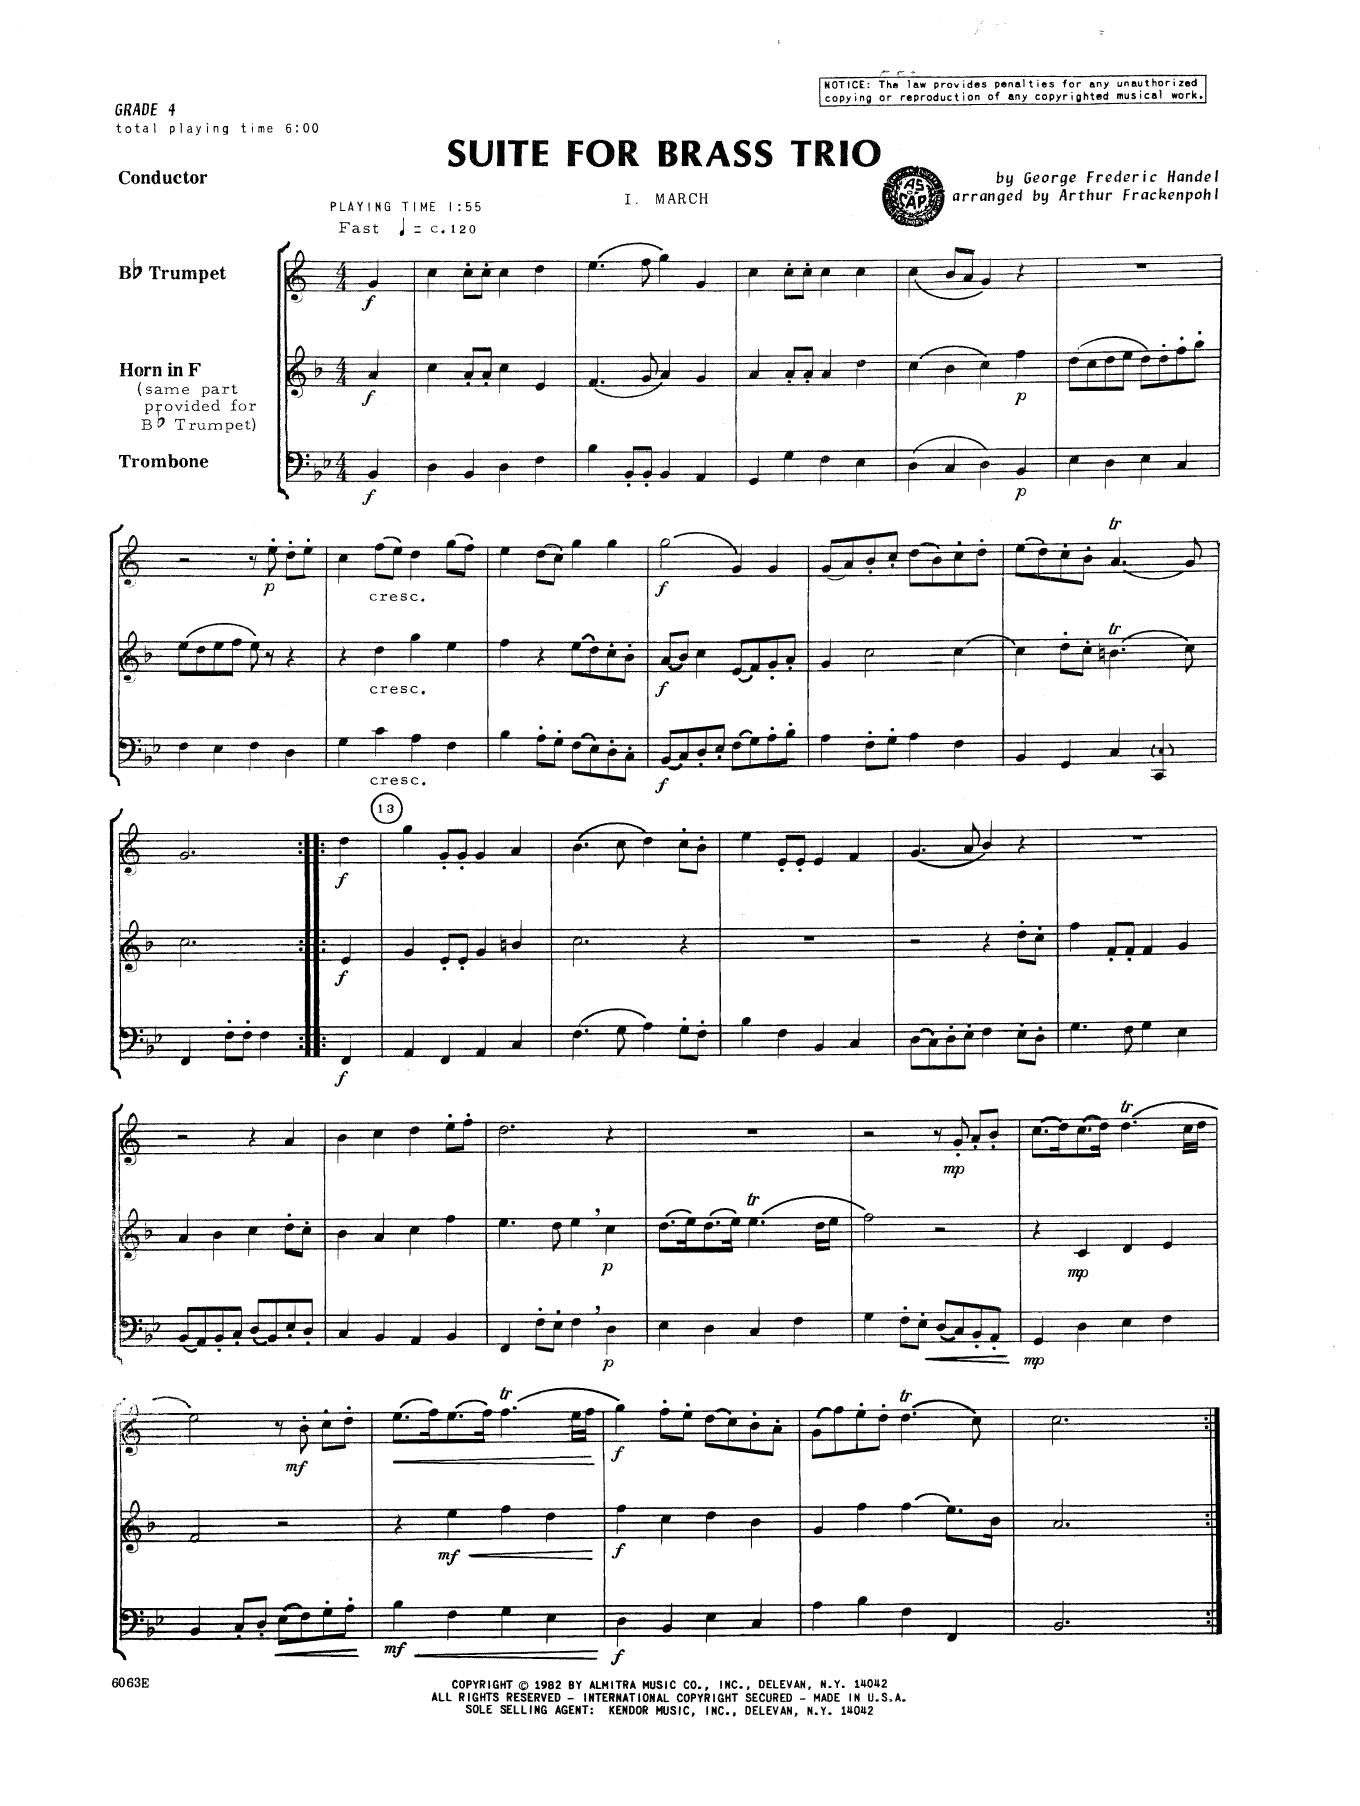 Download Frackenpohl Suite For Brass Trio - Full Score Sheet Music